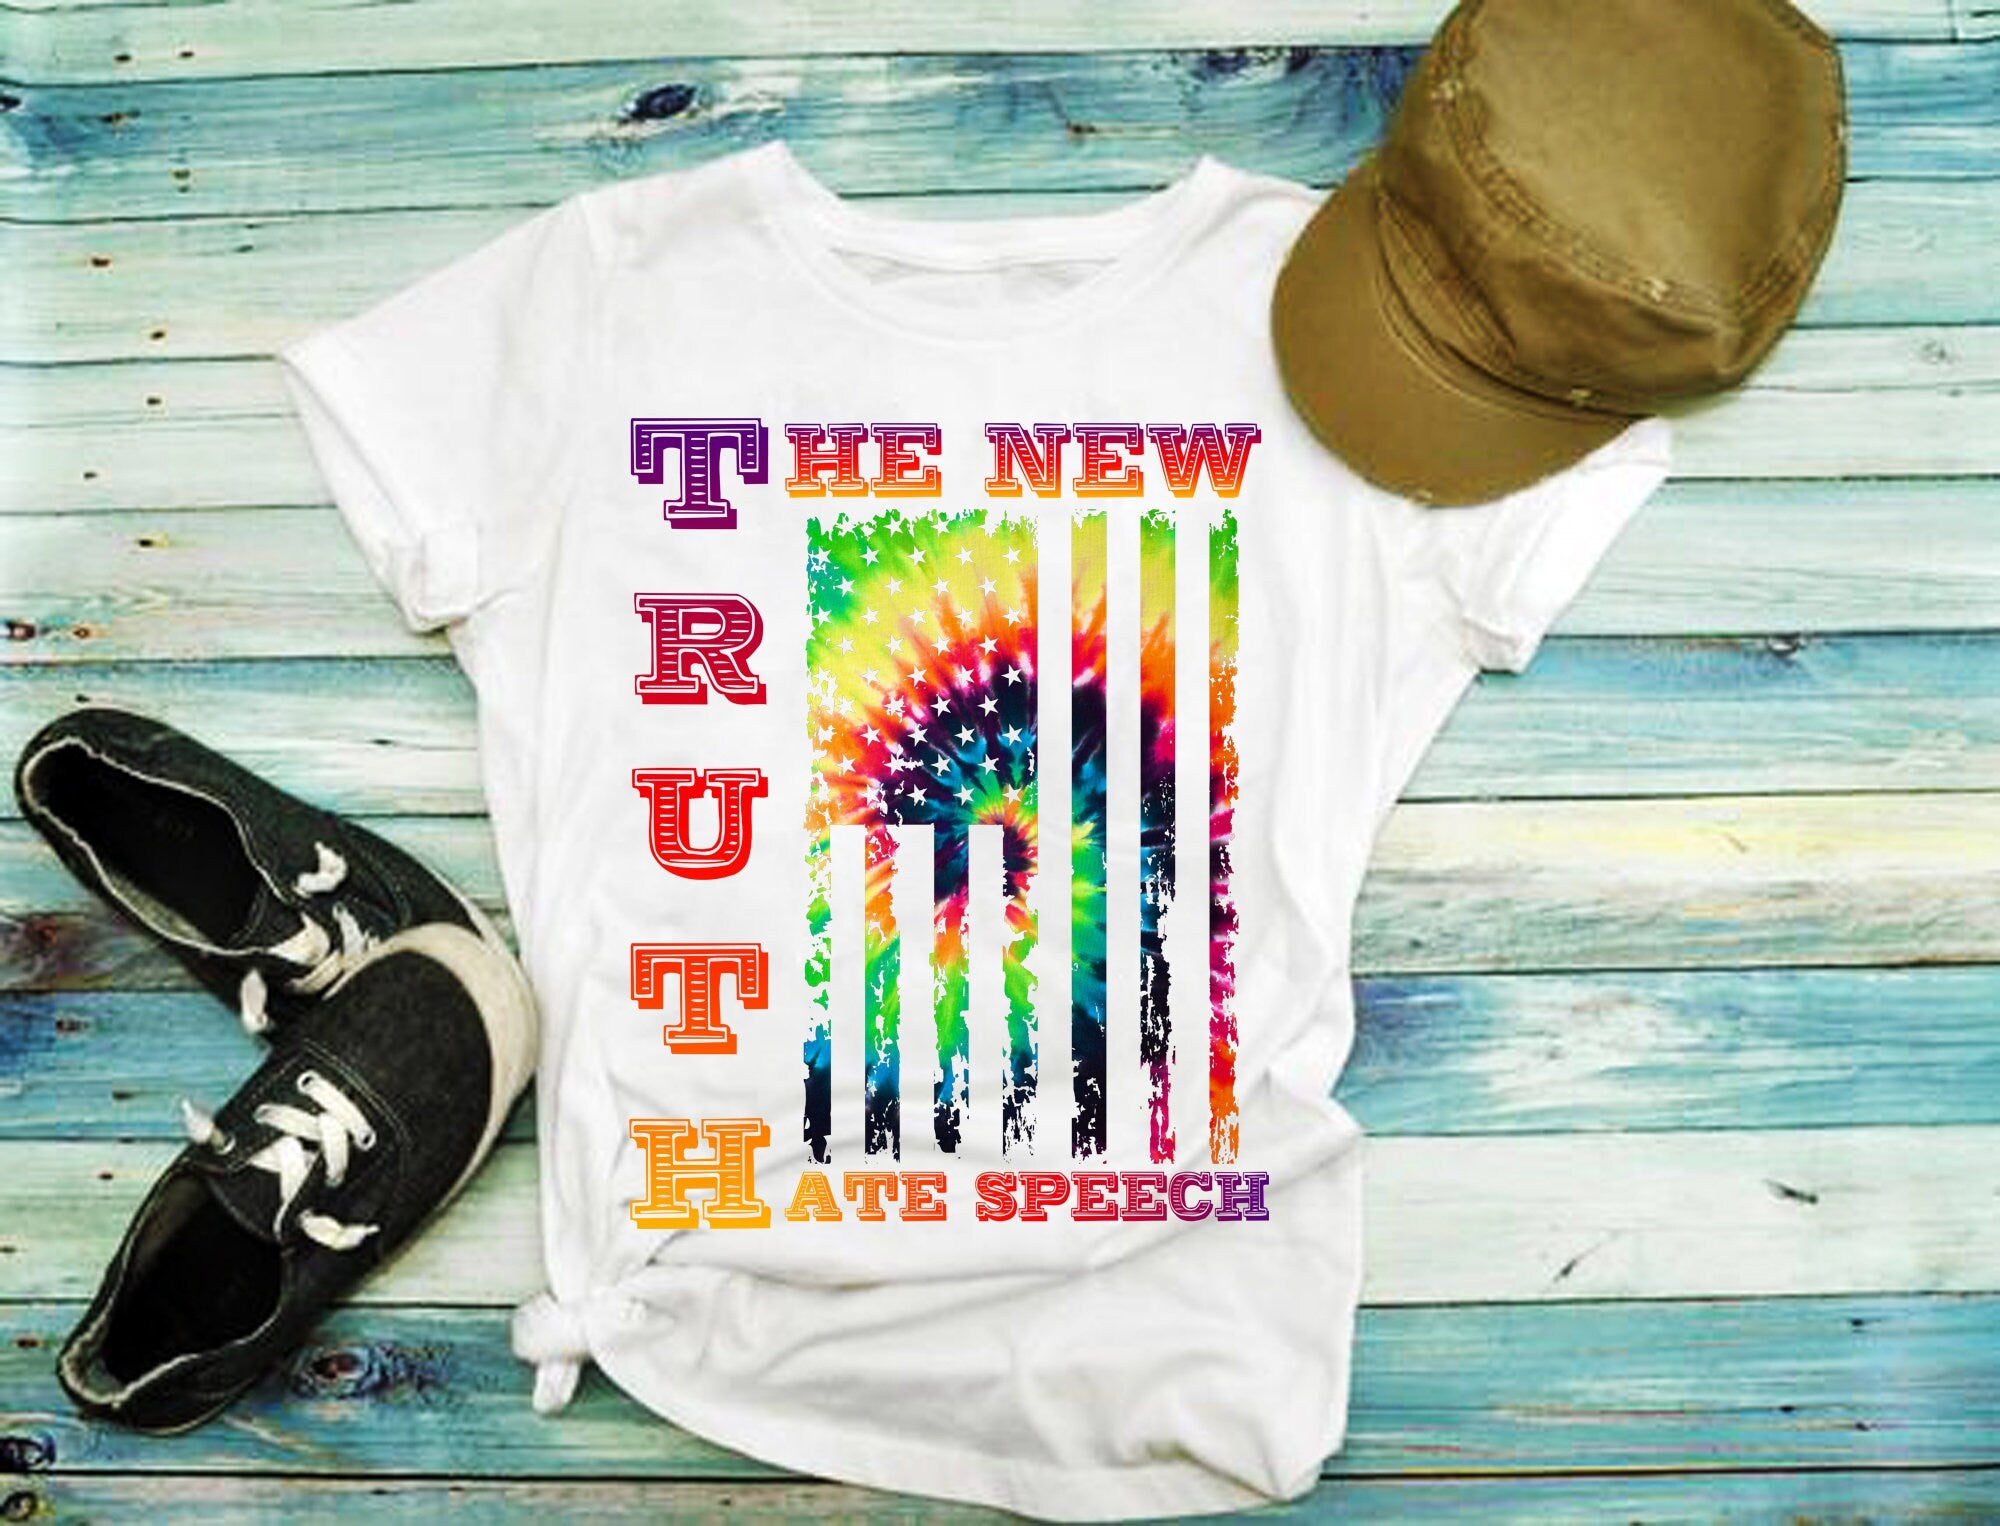 Verdad Las nuevas camisetas de discurso de odio, corrección política, camisetas republicanas conservadoras, camiseta de votante, camiseta de política, camiseta de votación - plusminusco.com